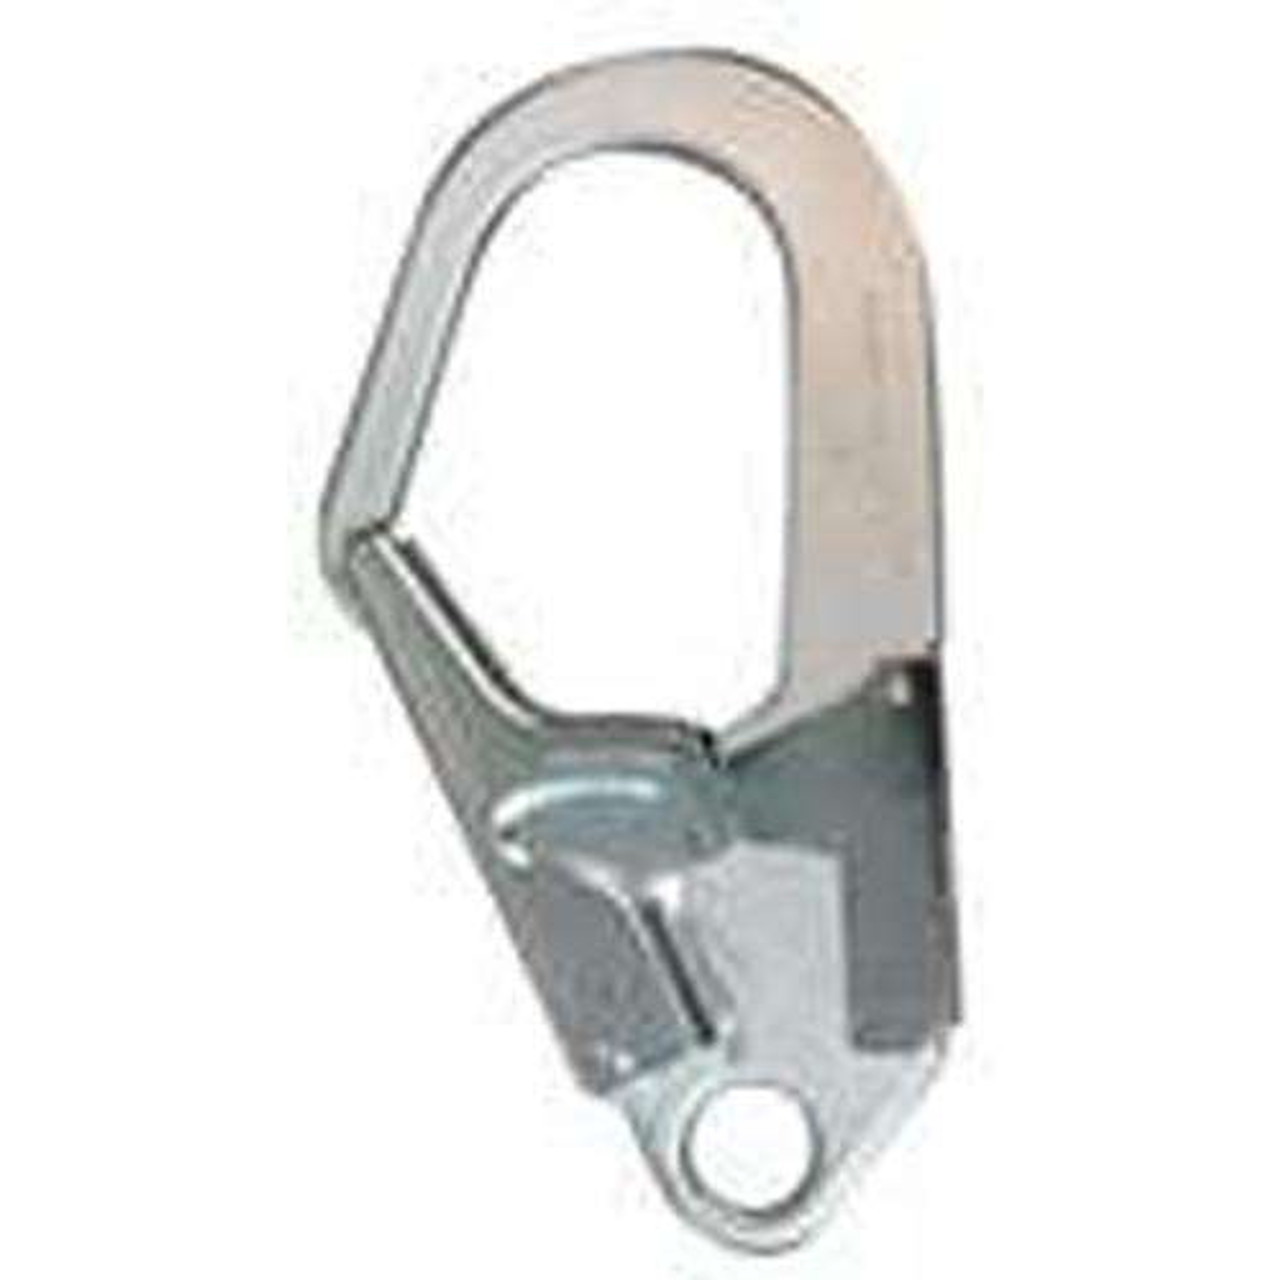 DOUBLE LOCKING LANYARD REBAR HOOK - ANSI Z359.1 3600# GATE - Bairstow  Lifting Products